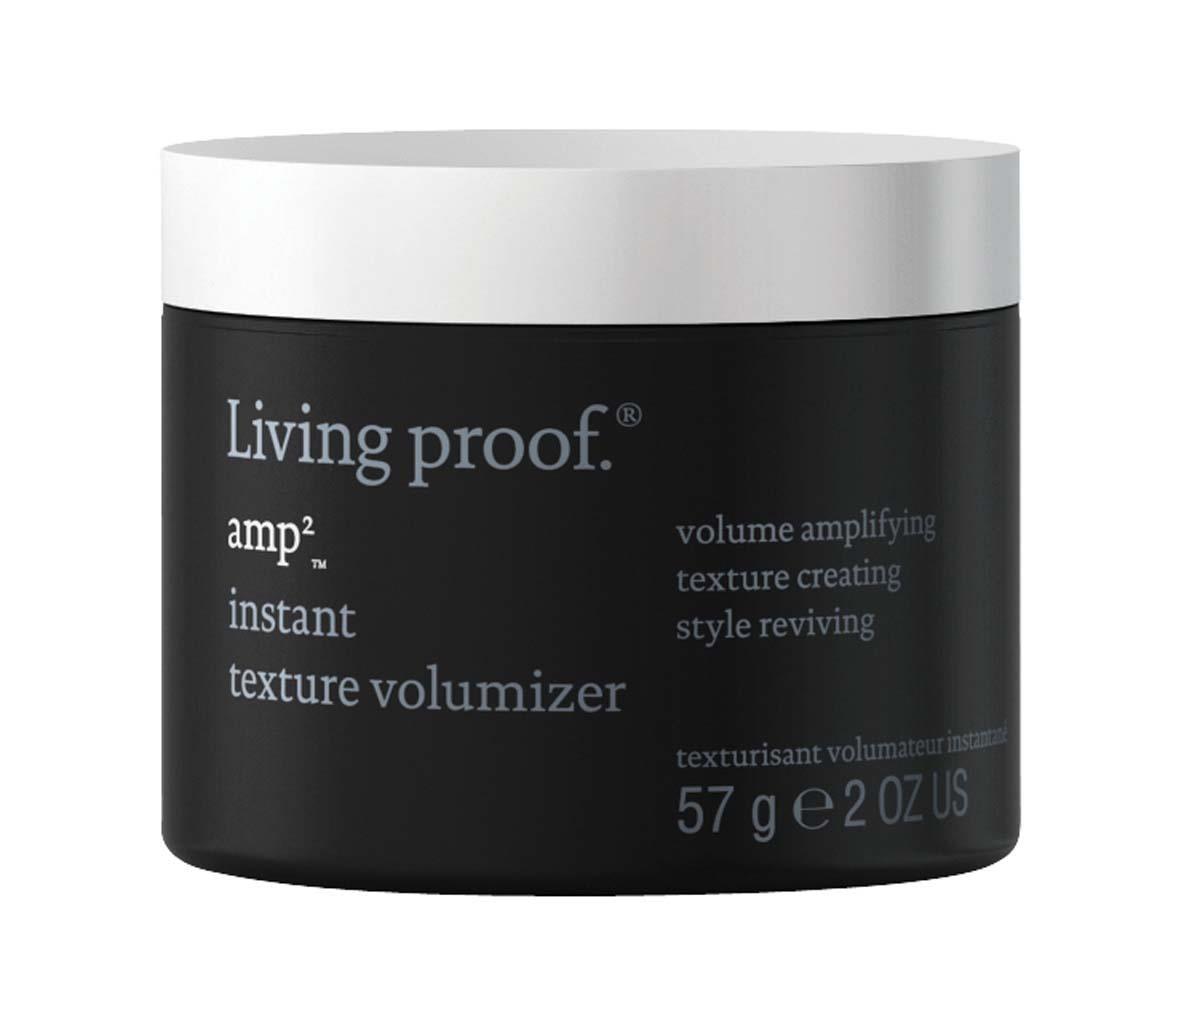 Living Proof Amp Instant Texture Volumizer | Volum | Living Proof | JK SHOP | JK Barber og herre frisør | Lavepriser | Best